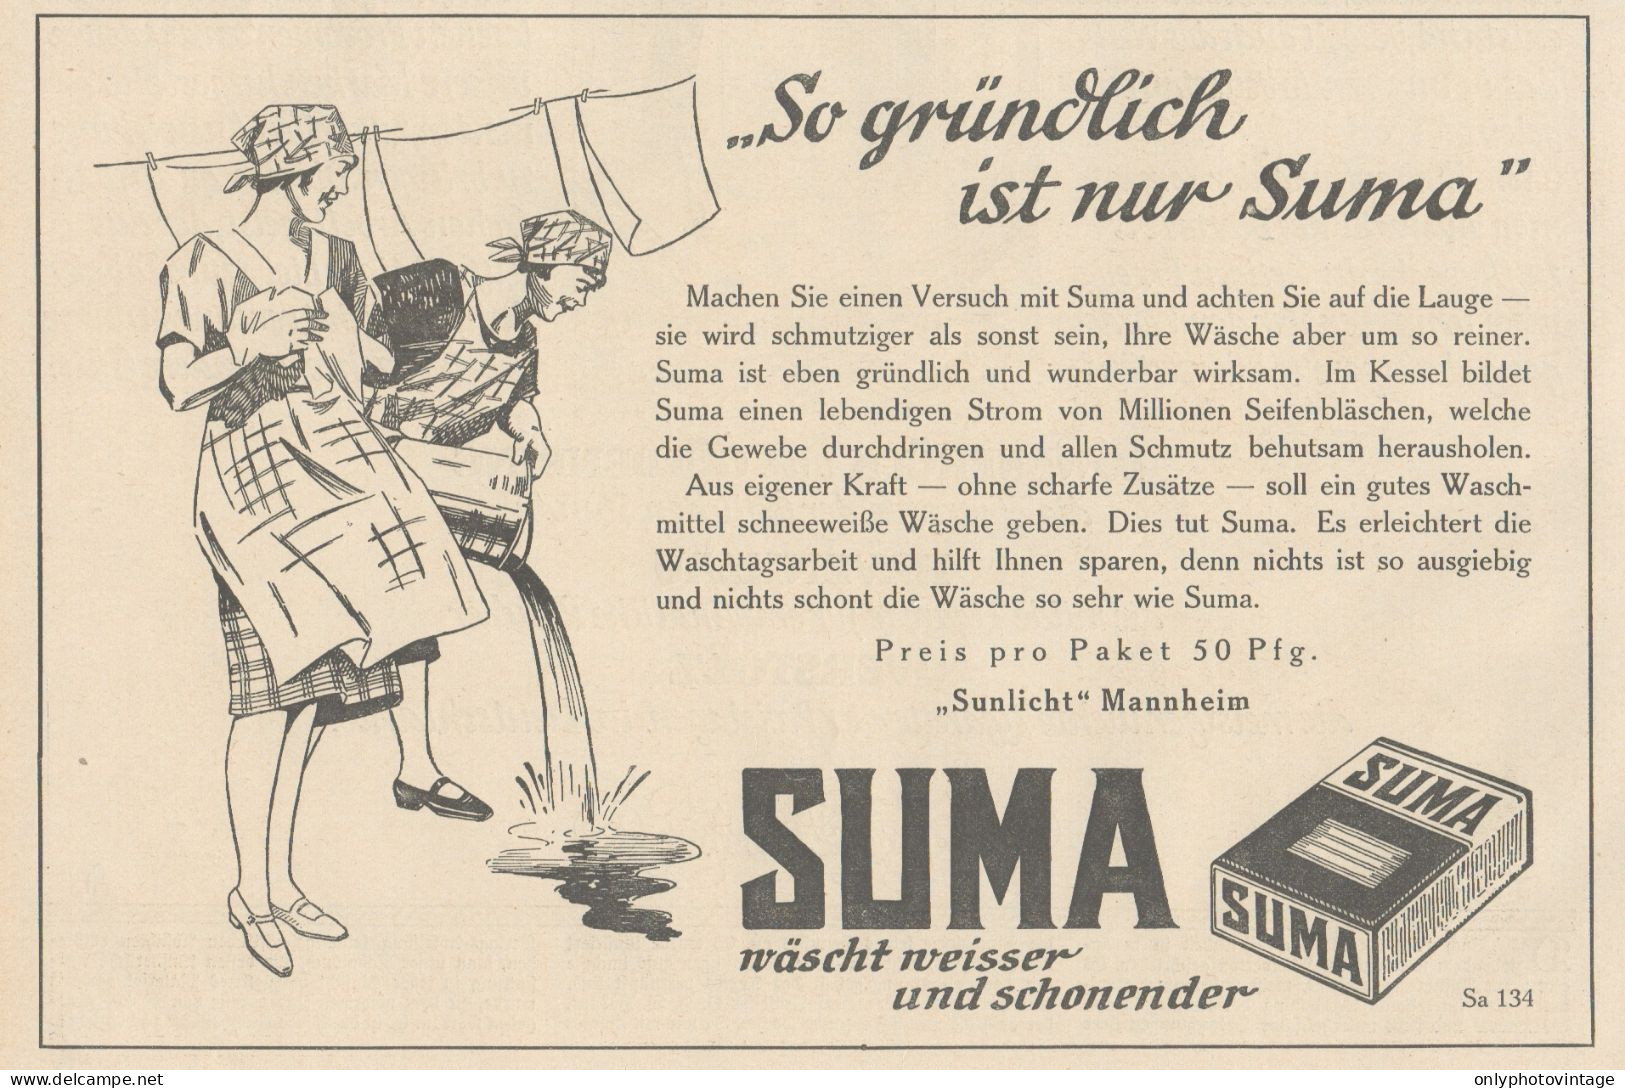 Detersivo SUMA - Illustrazione - Pubblicità D'epoca - 1927 Old Advertising - Publicidad